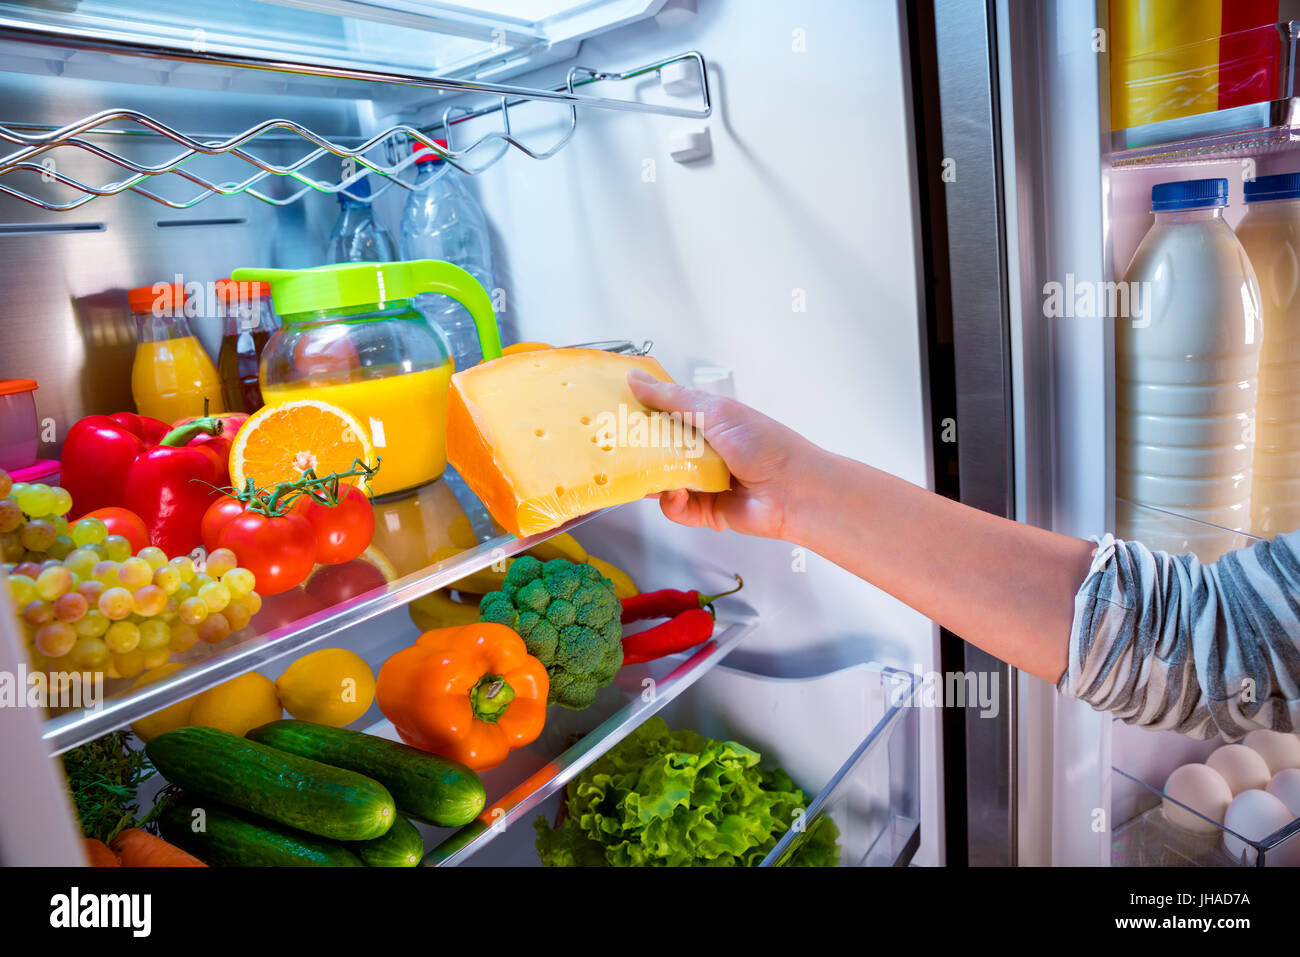 There are some eggs in the fridge. Холодильник с продуктами. Холодильник с едой. Открытый холодильник с продуктами. Холодильник для овощей.